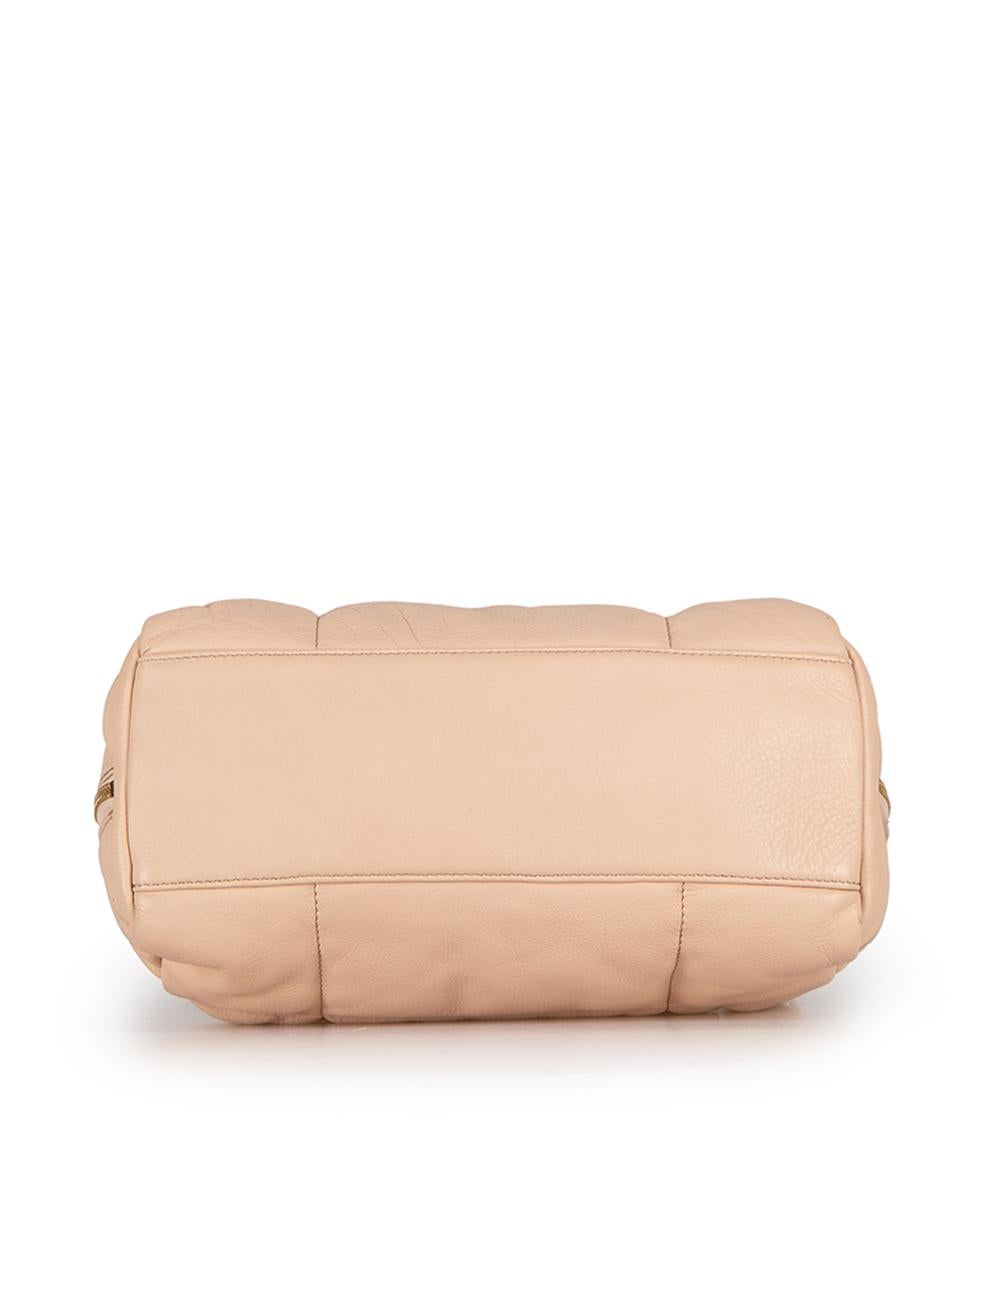 Dries Van Noten Women's Pink Quilted Leather Handbag 1